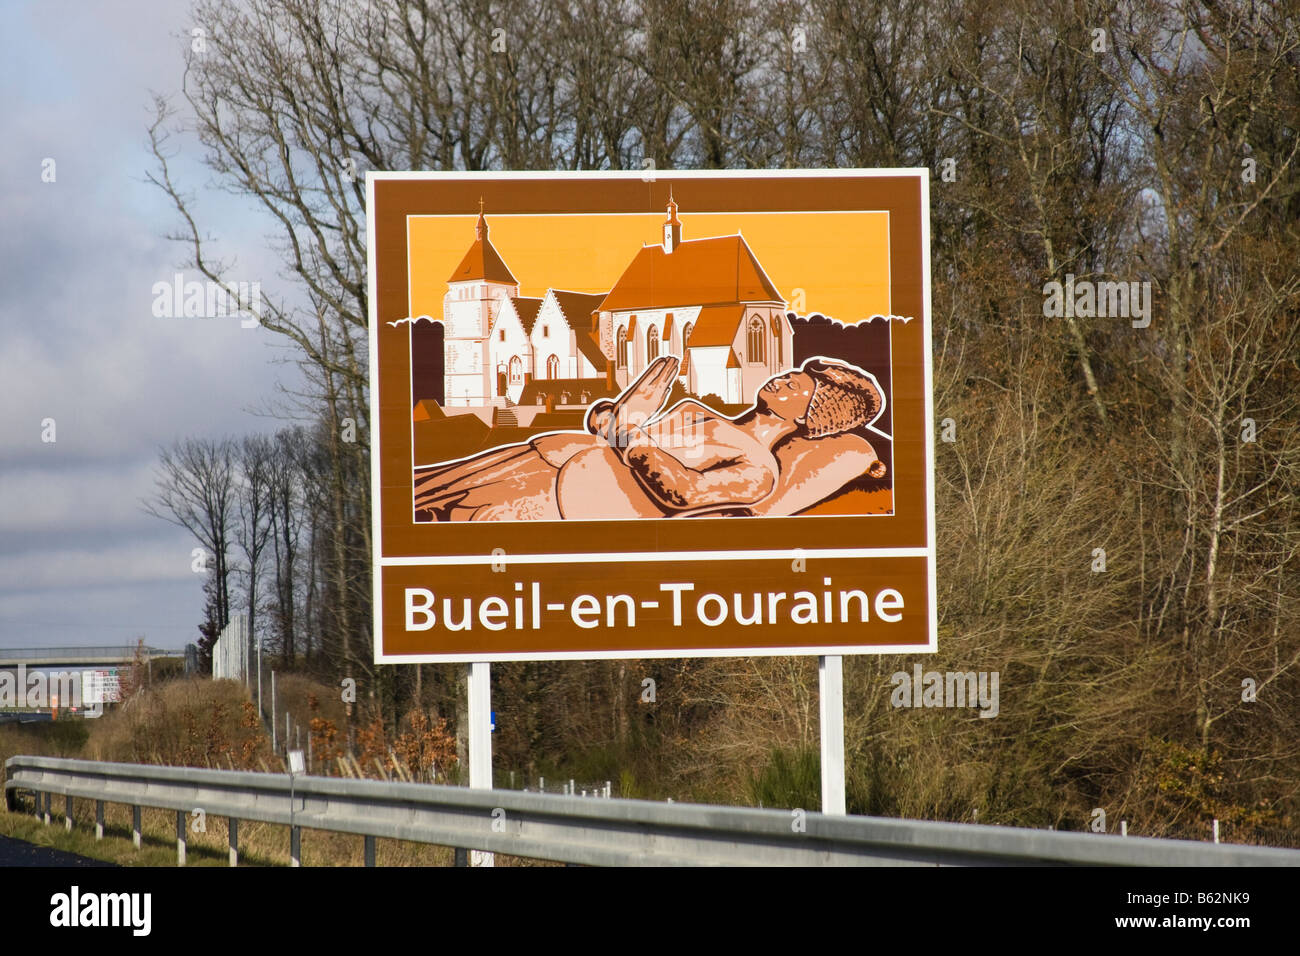 French Autoroute tourist sign Bueil en touraine Stock Photo